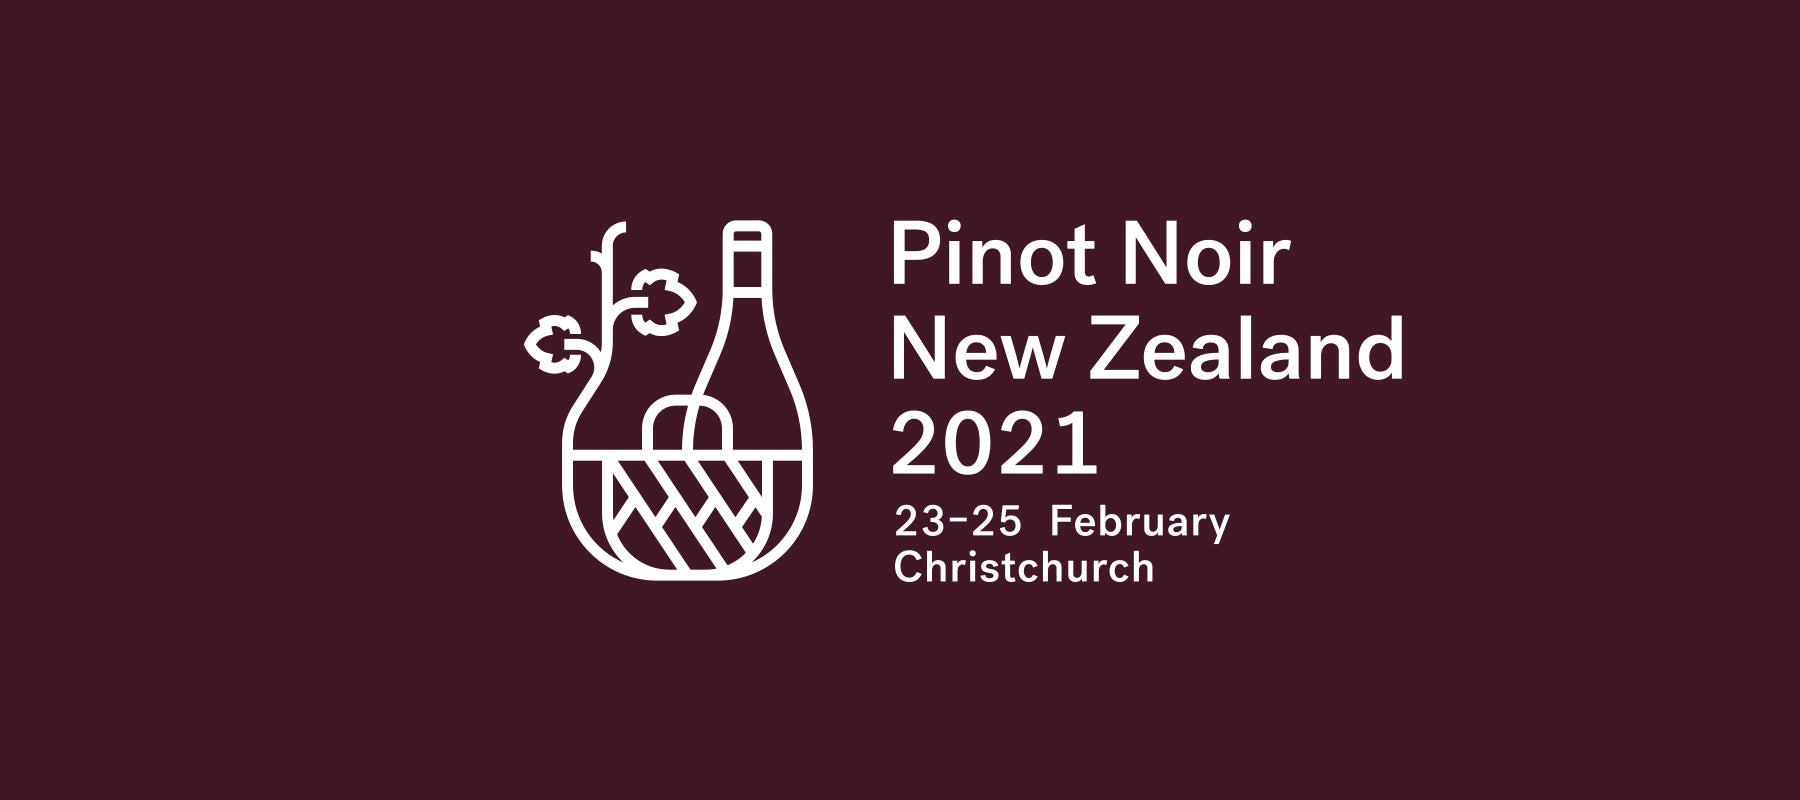 Pinot Noir NZ 2021: 23-25 February 2021